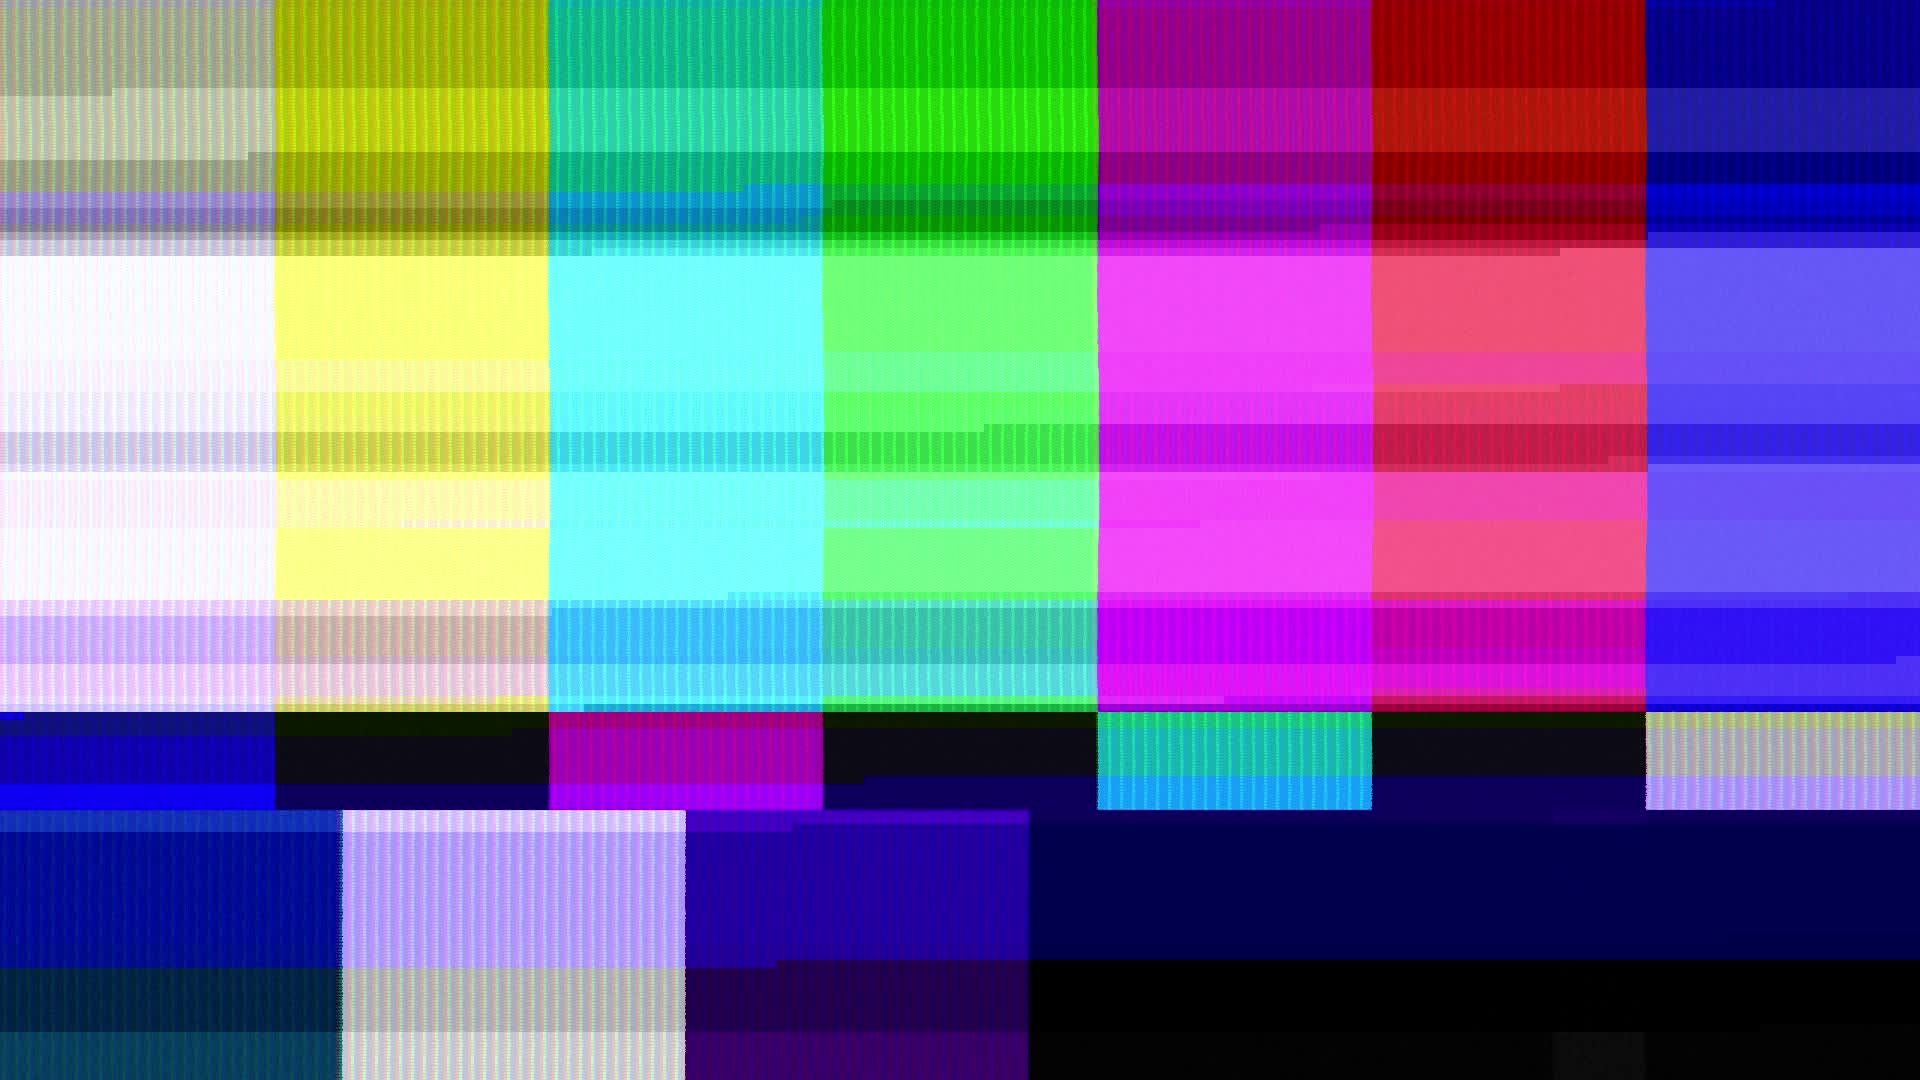 Технические помехи. Настроечная таблица 16 9. Разноцветный экран. Цветной экран телевизора. Цветные полоски на телевизоре.